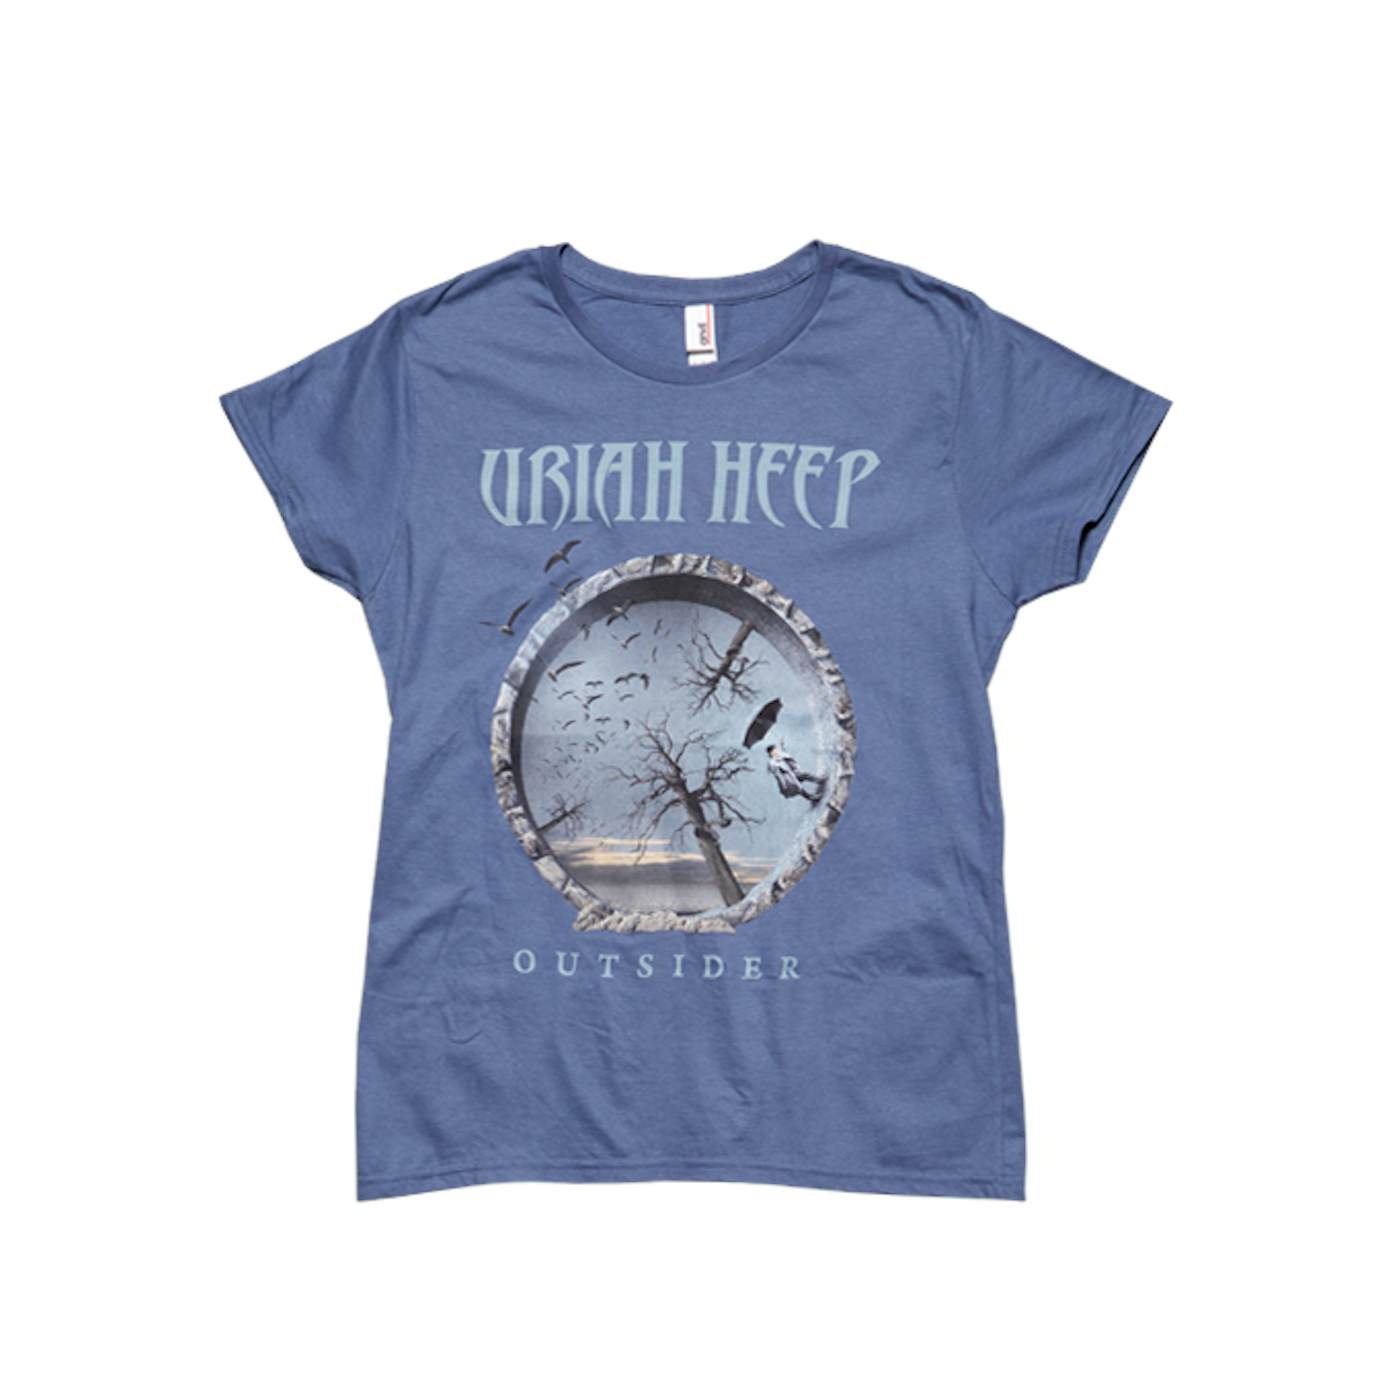 Uriah Heep "Outsider" Women's T-Shirt